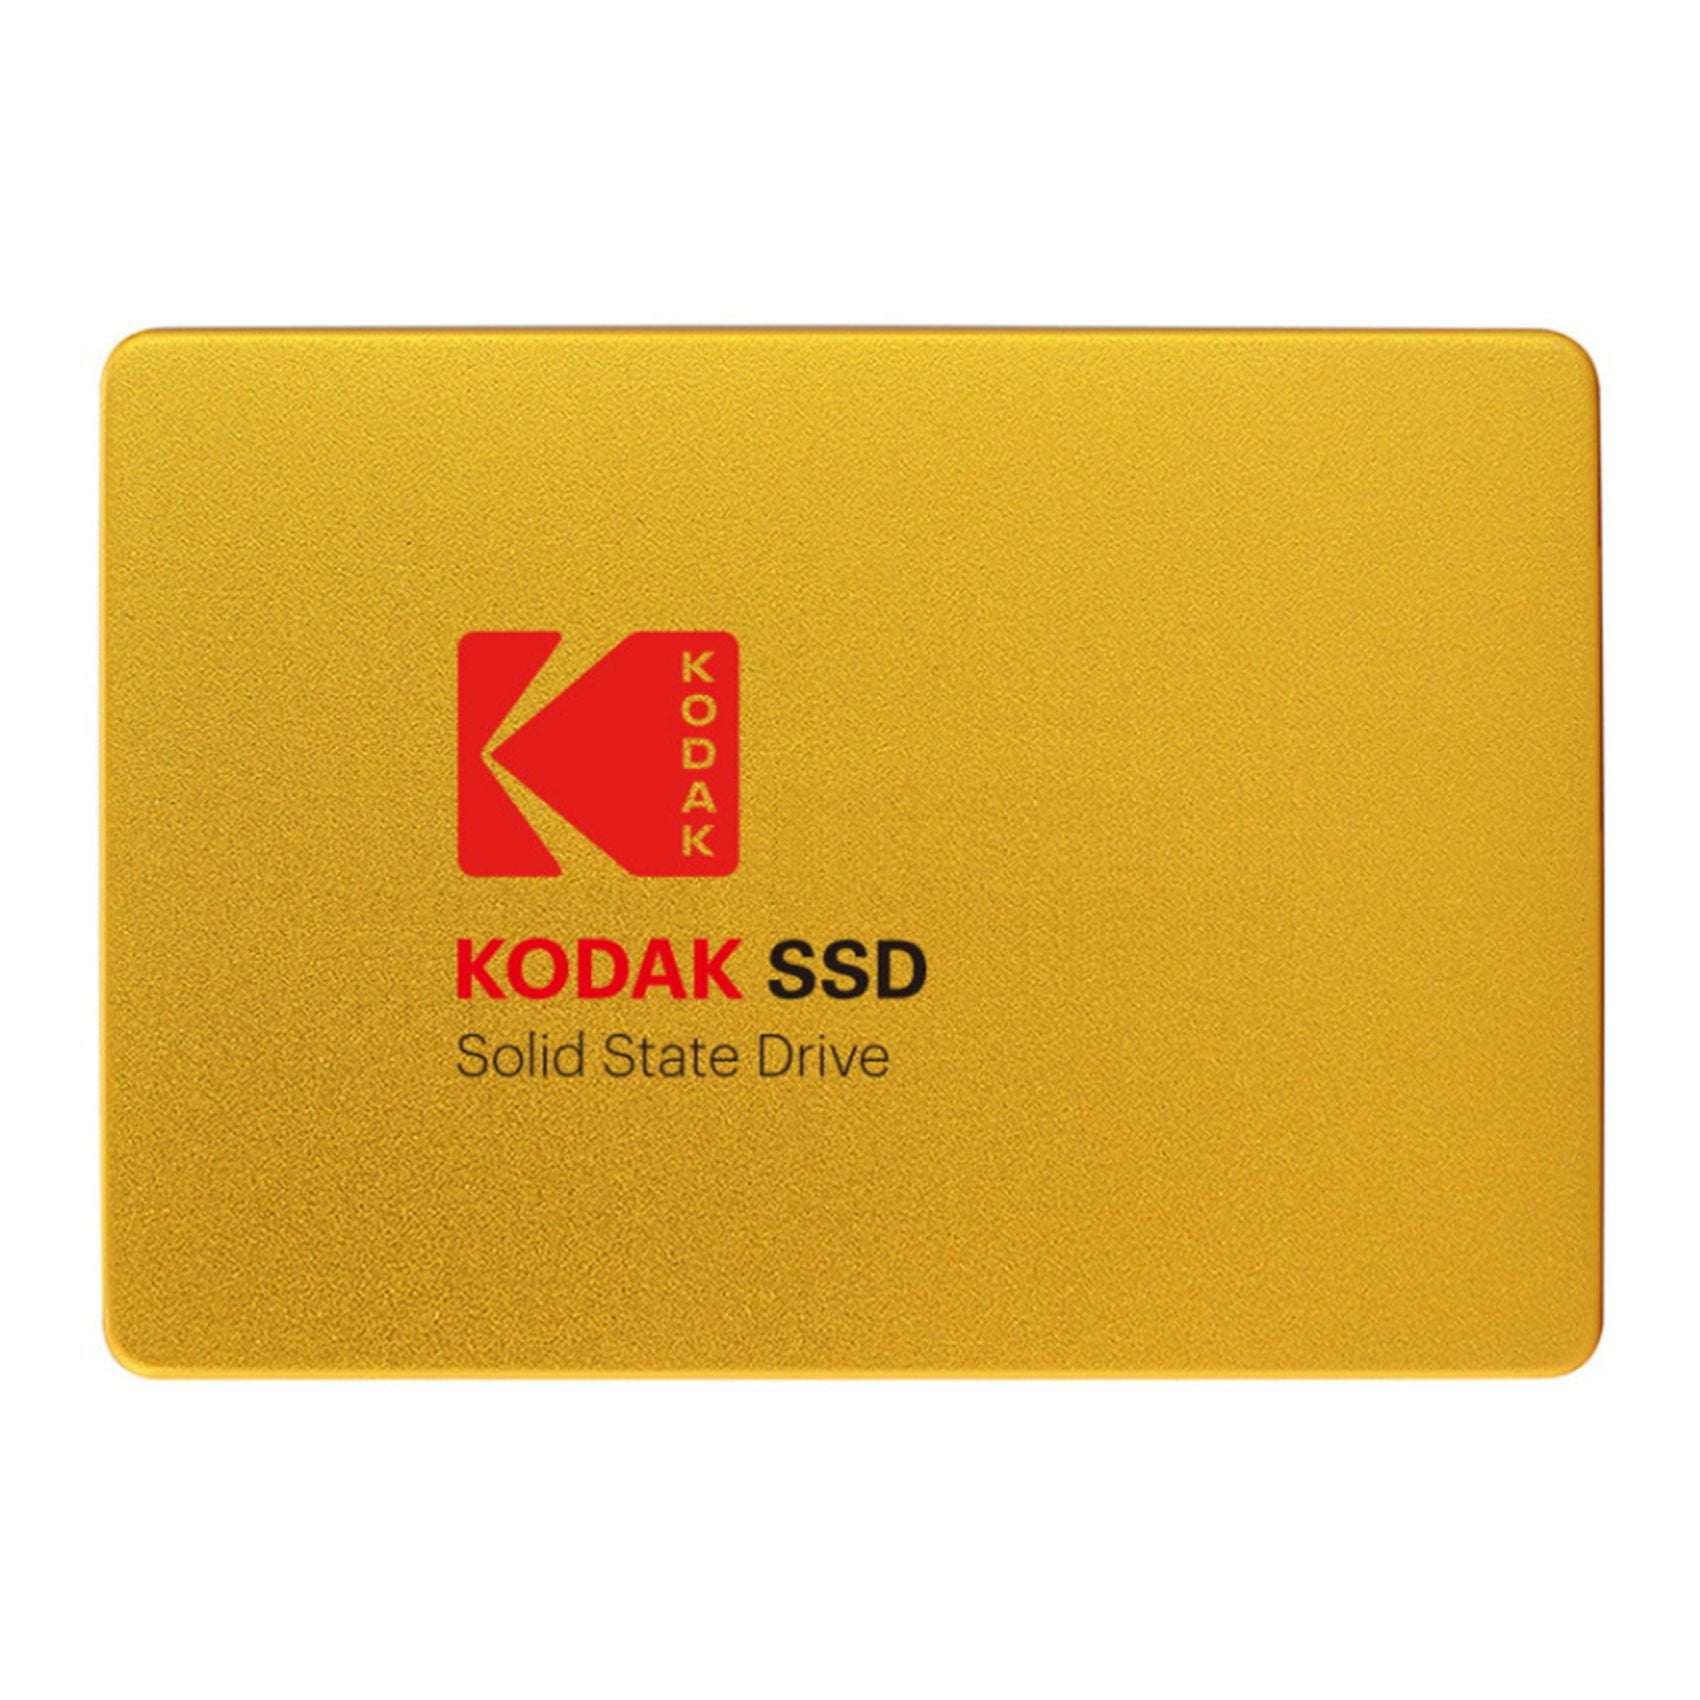 Per assembly Render KODAK X100 2.5 Inch Sata3 SSD Solid State Drive 480GB Metal Hard Drive  Built-in Hard Drive Solid State Drive for Laptop Desktop - Walmart.com